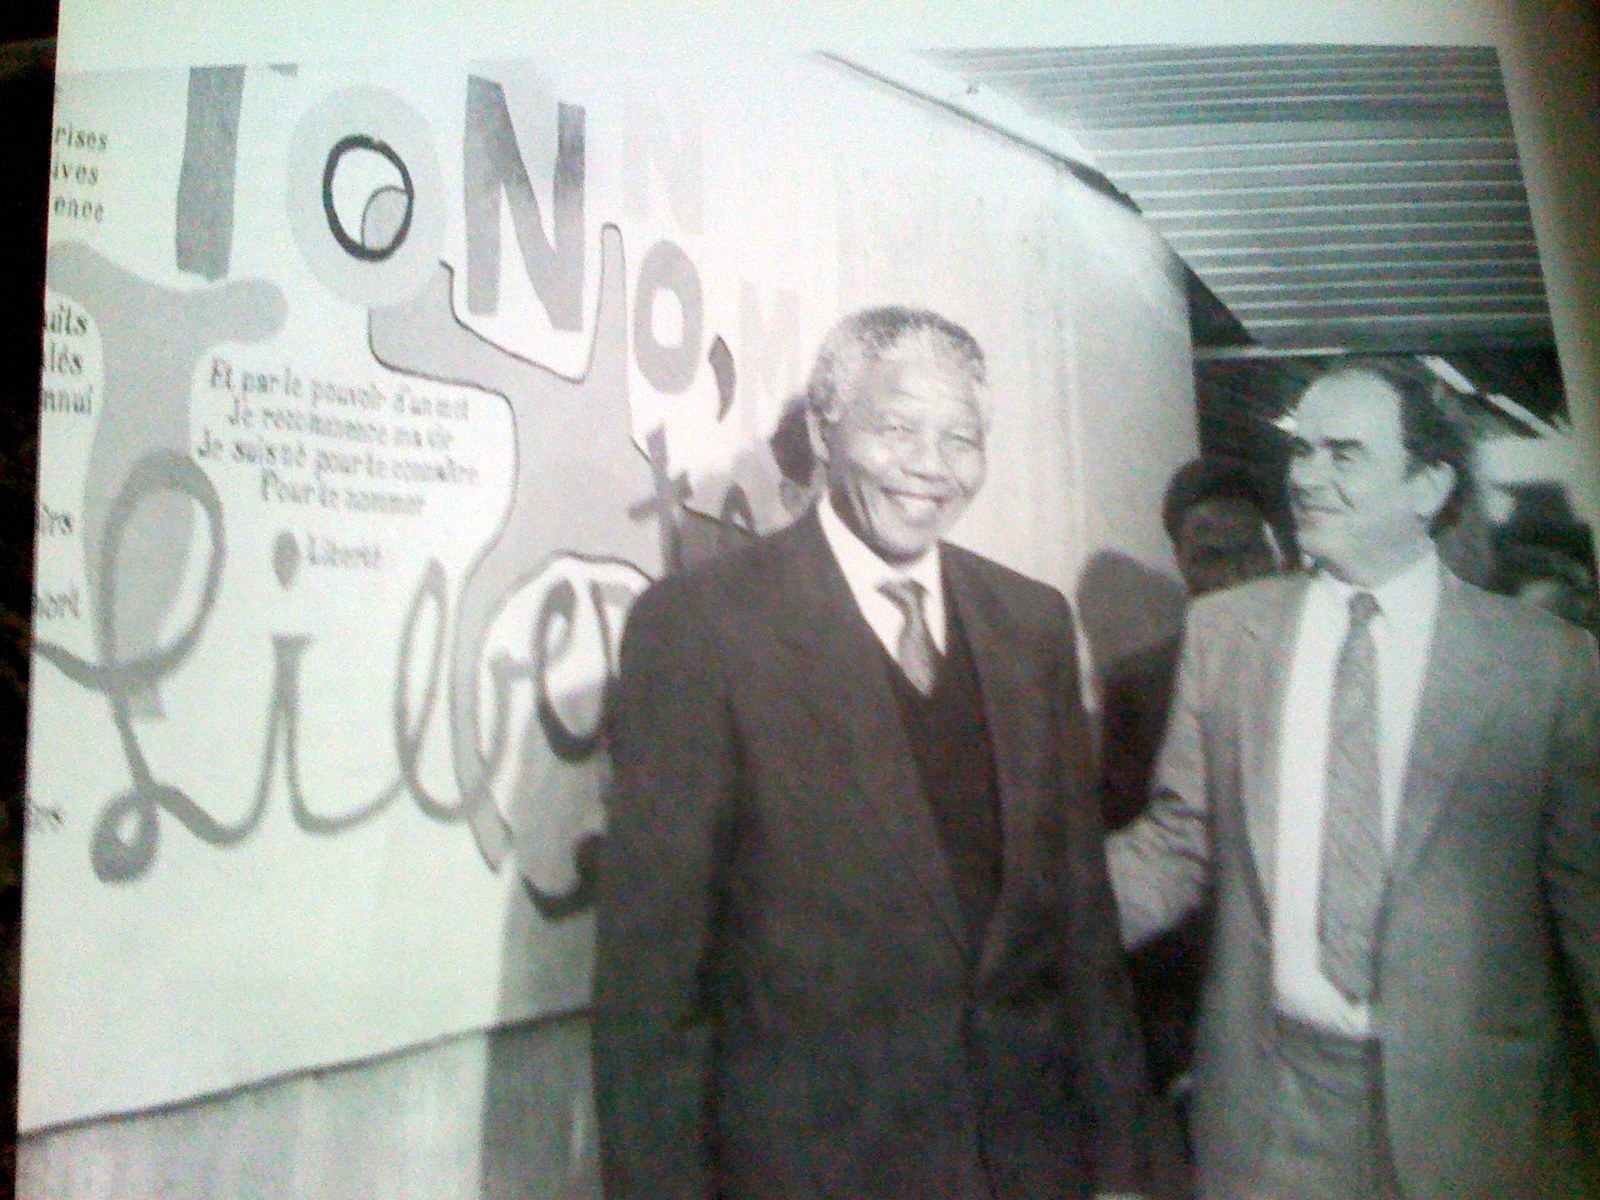 Allocution de bienvenue prononcée par Georges Marchais à l’occasion de la visite de Nelson Mandela au siège du PCF